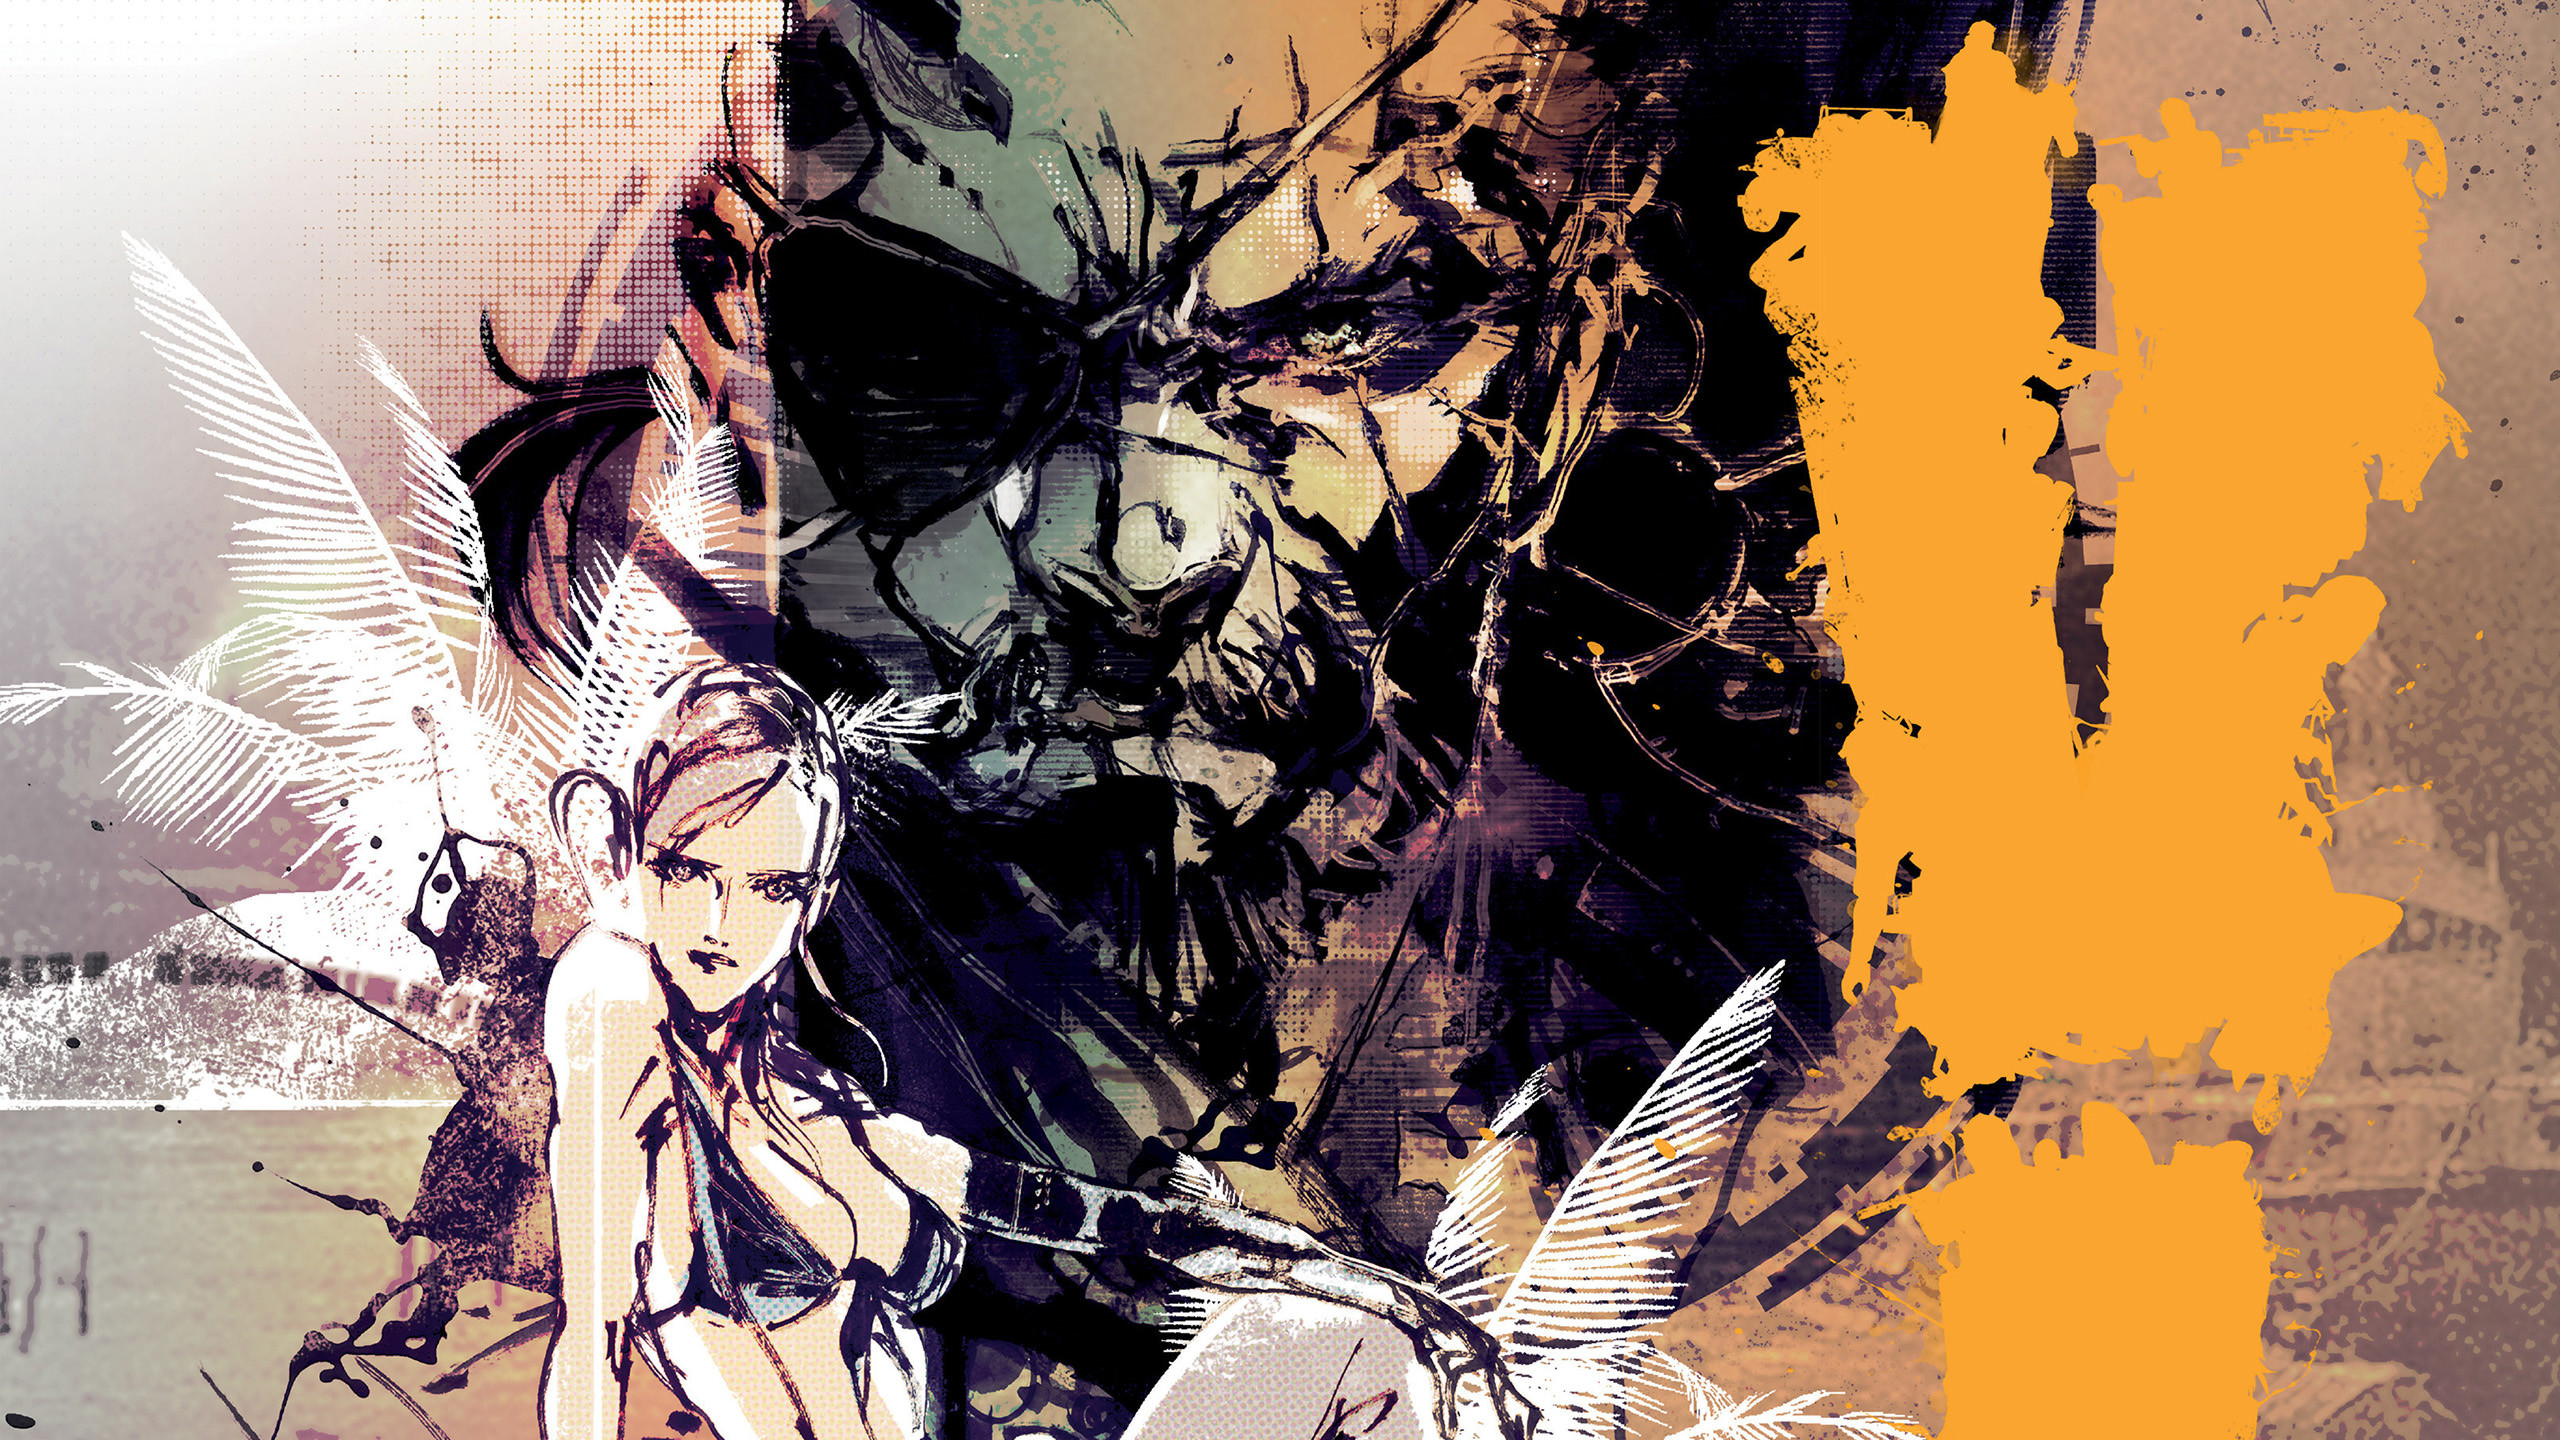 2560x1440 Art of Metal Gear Solid 5 Wallpapers